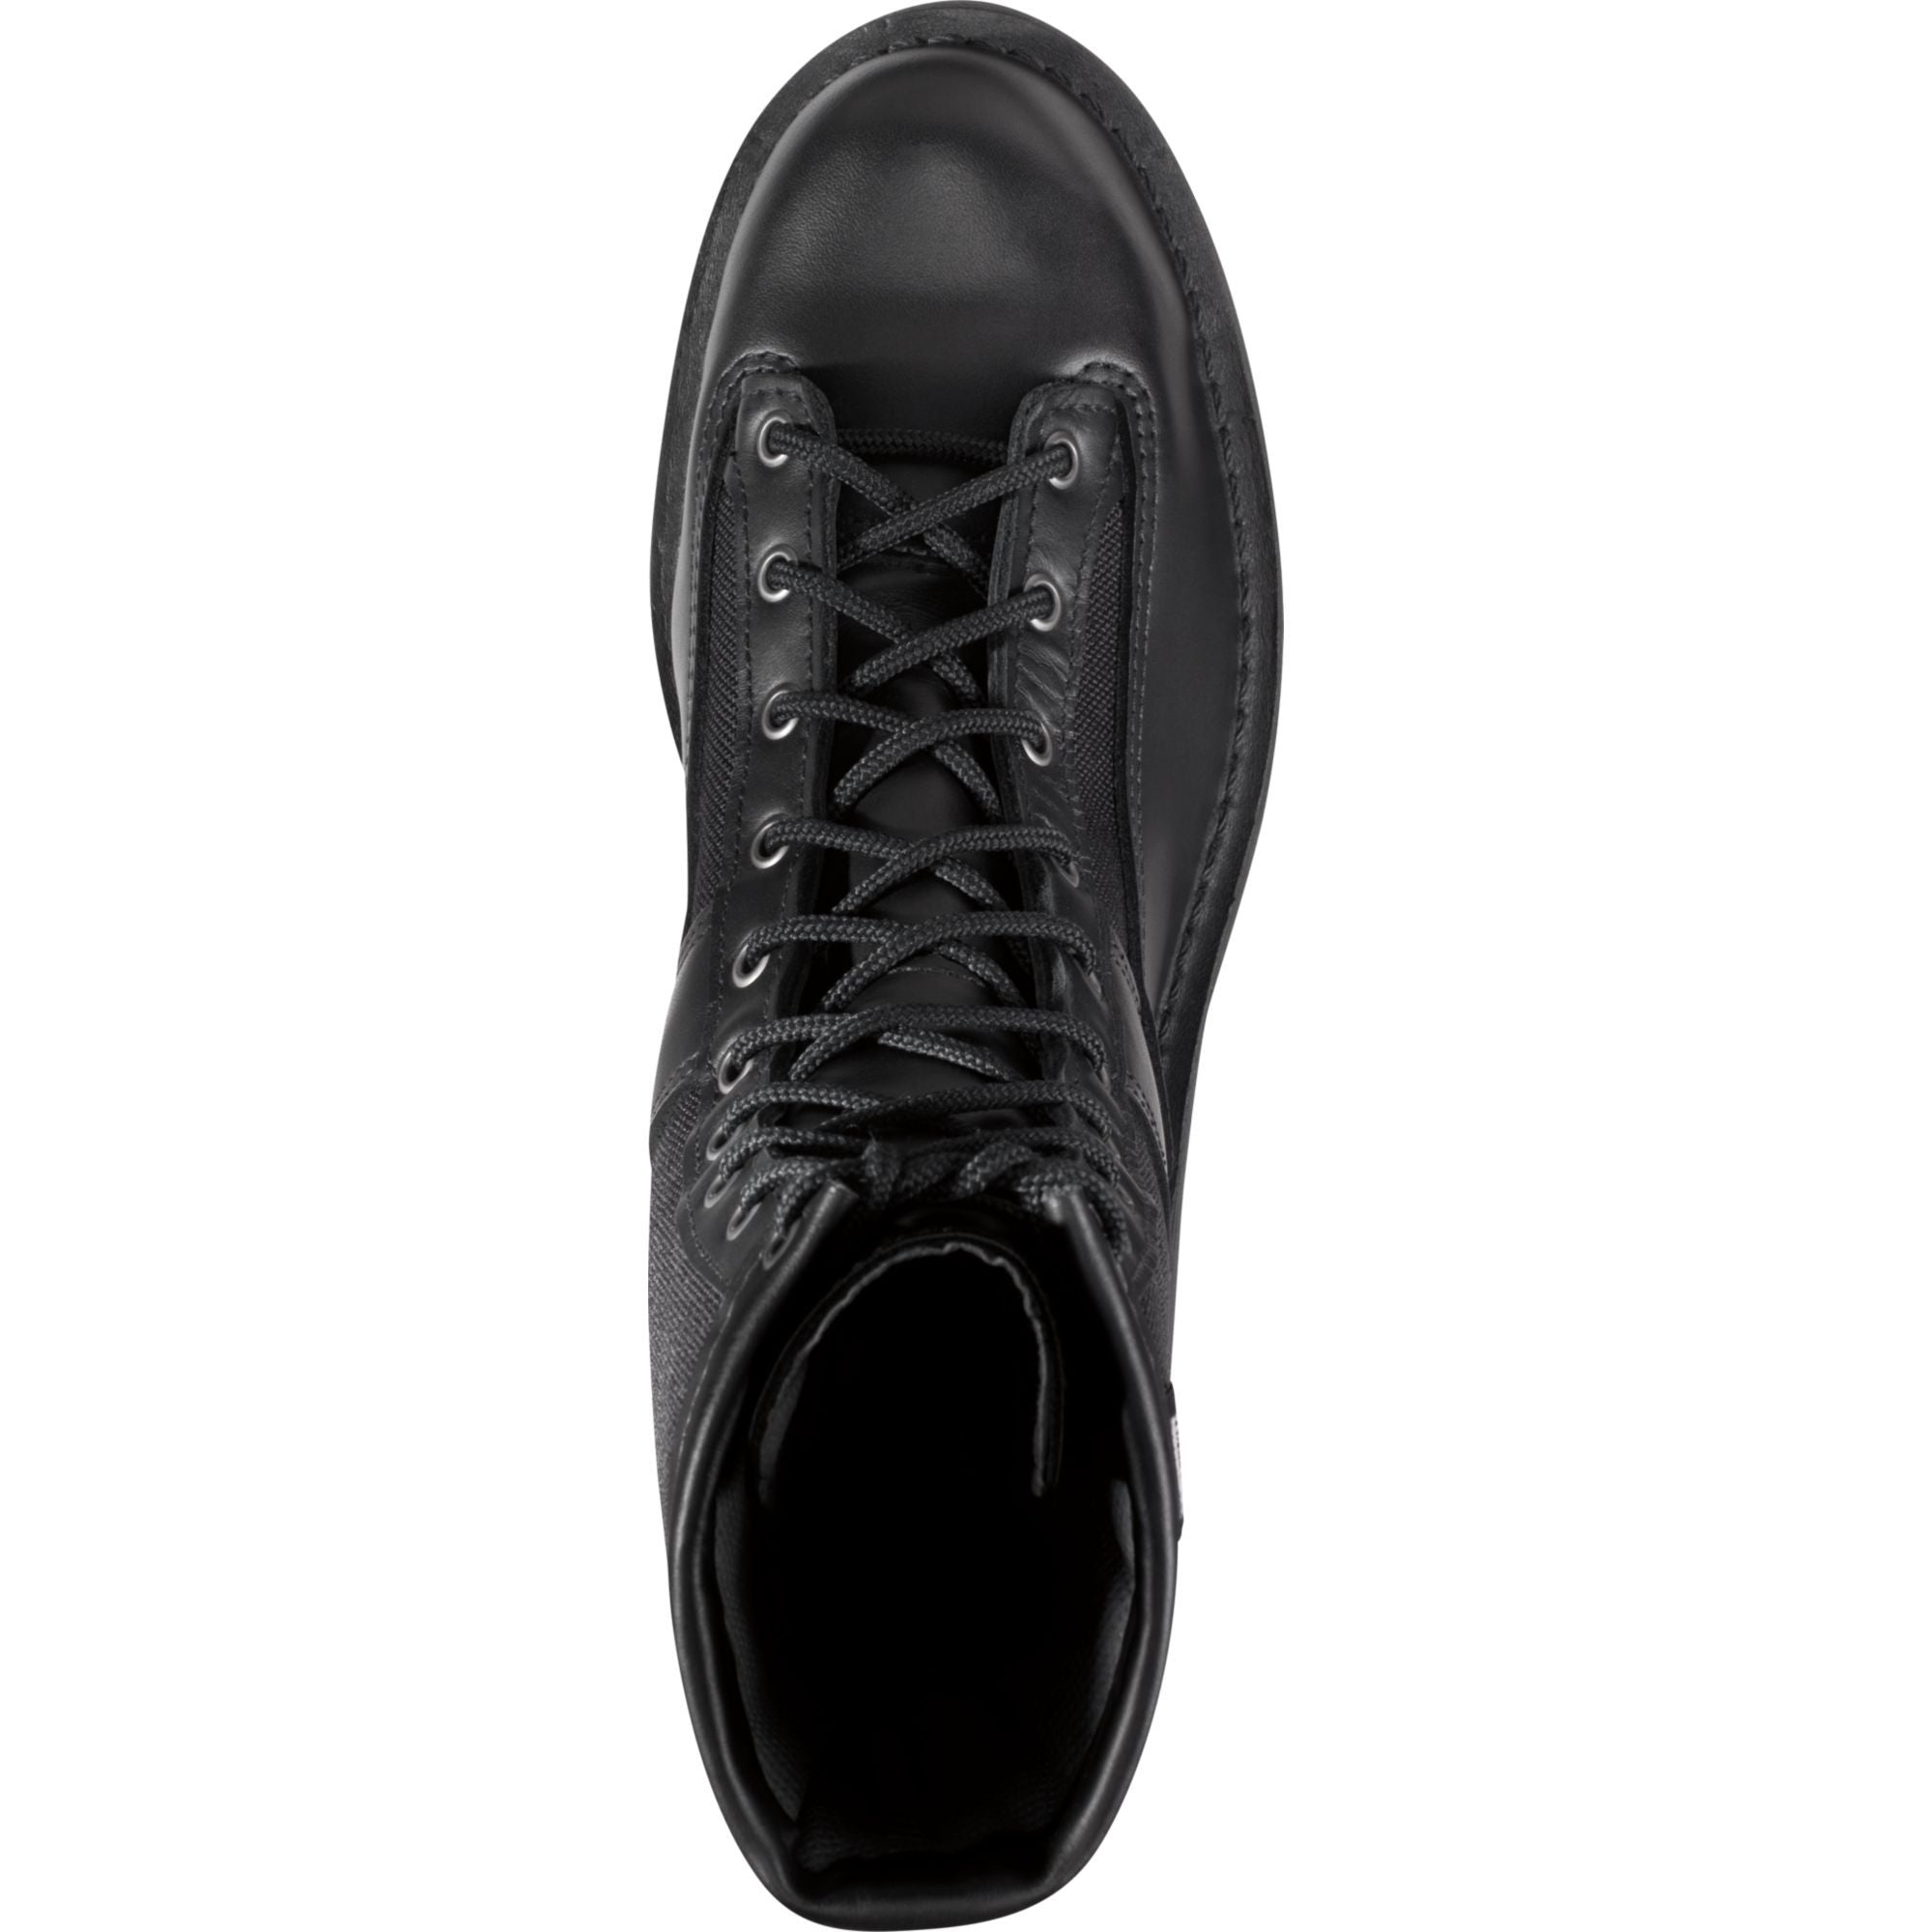 Danner Men's Acadia USA Made 8" Waterproof Duty Boot - Black - 21210  - Overlook Boots